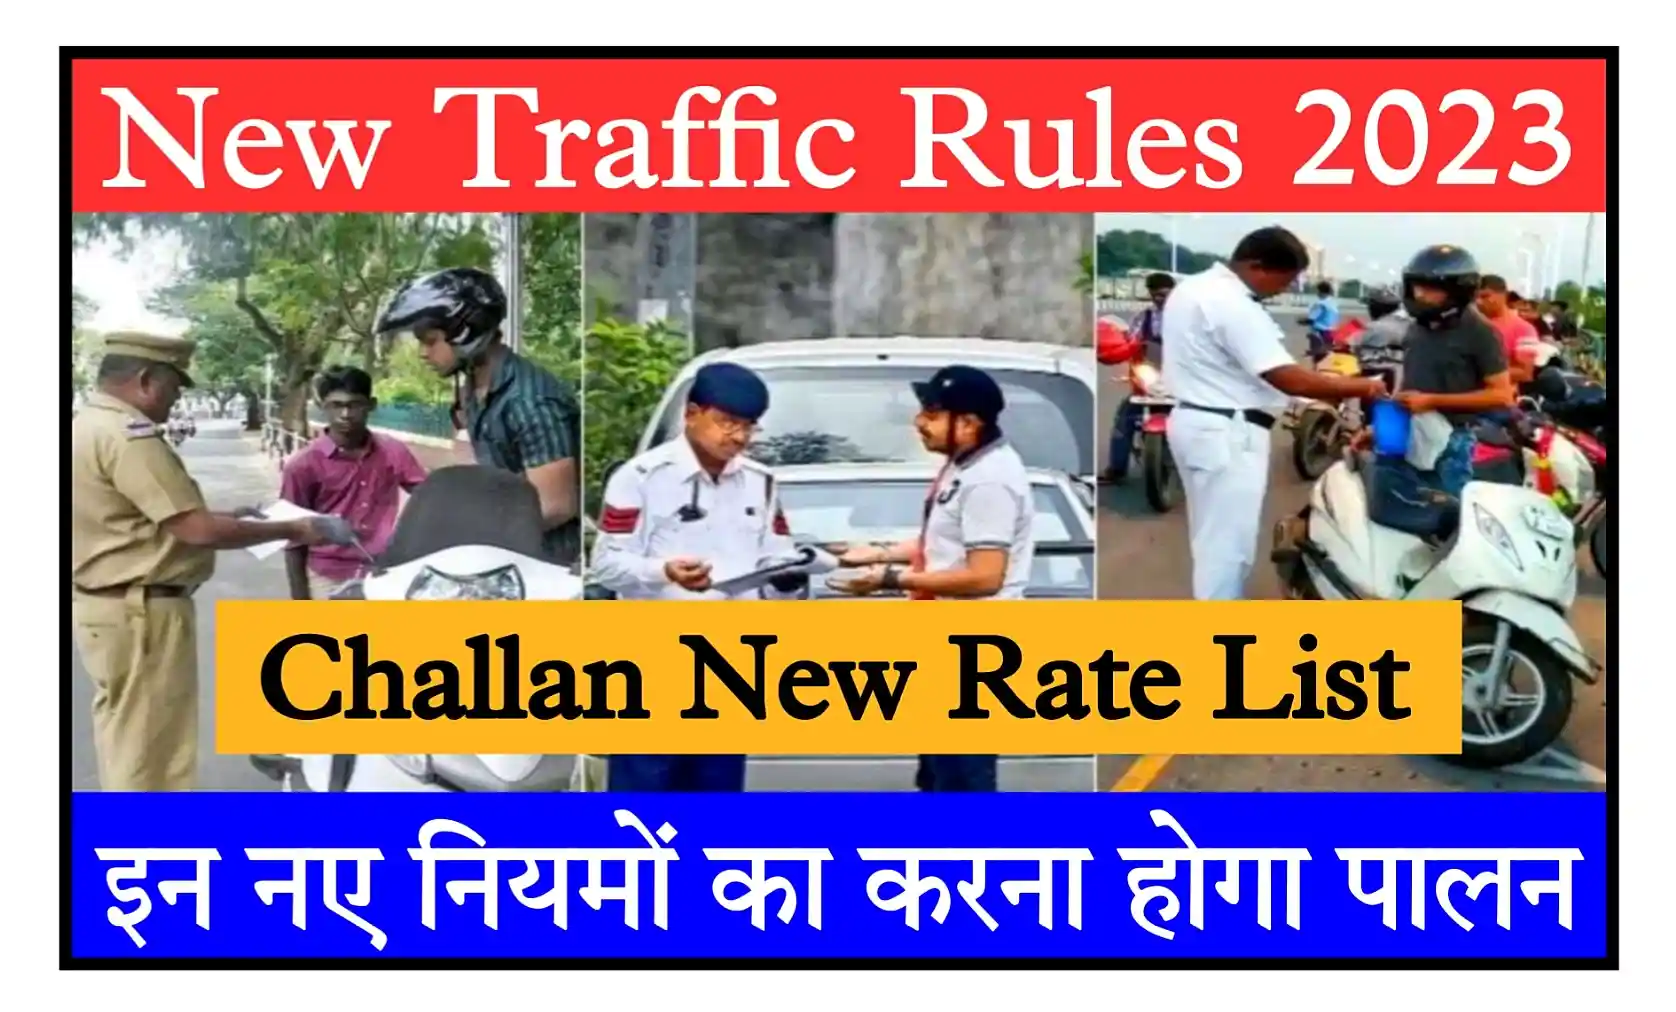 New Traffic Rules 2023 ट्रैफिक पुलिस के नए नियम और नई चालान फीस जारी, यहां देखें